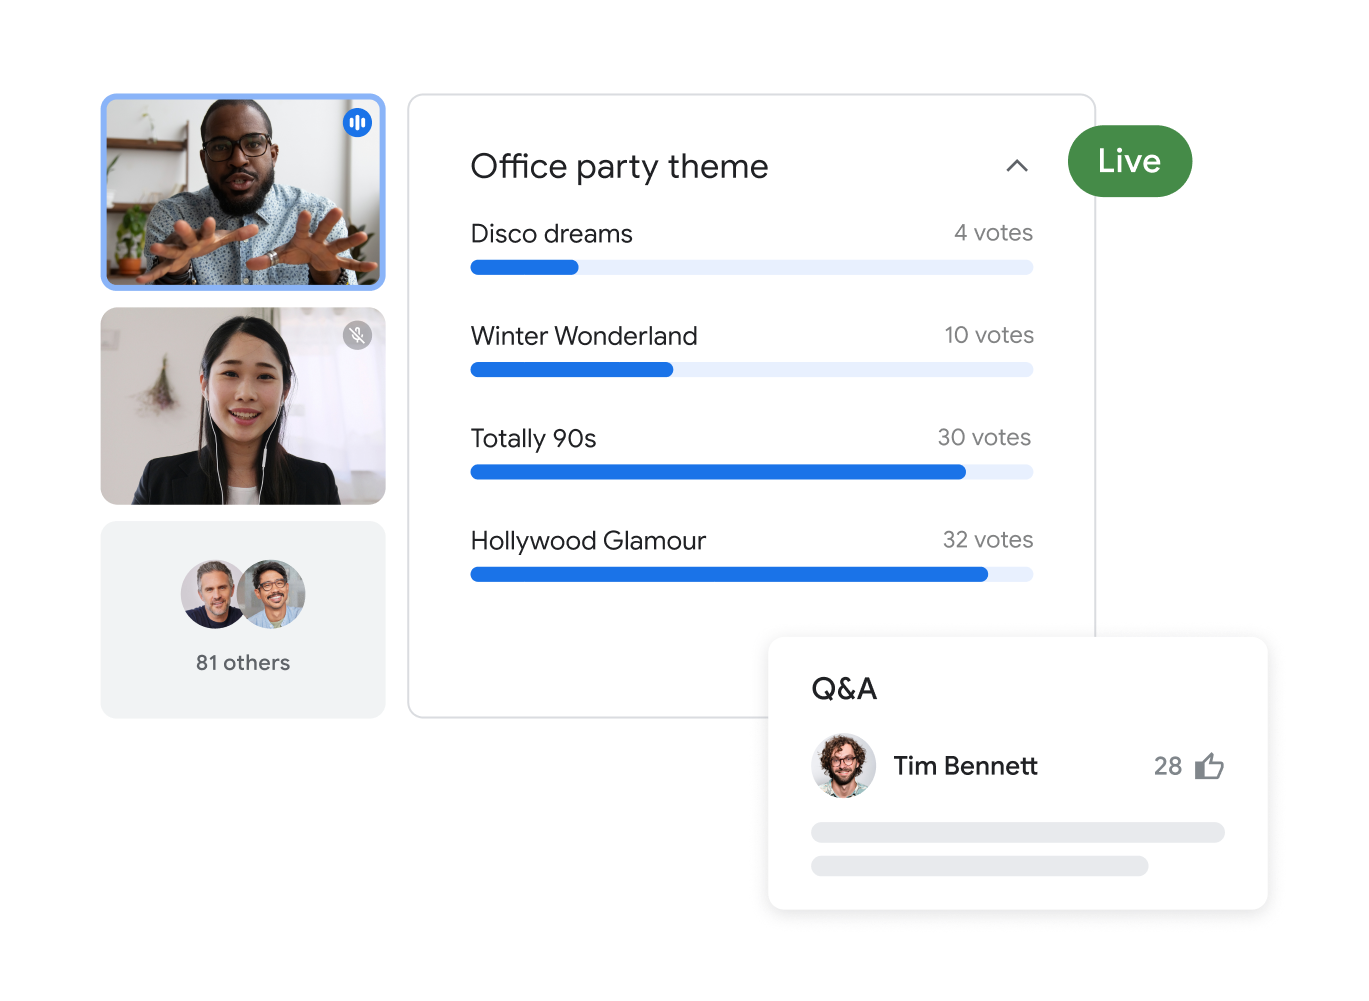 Google Meet 通話共有 83 名參與者，畫面上醒目顯示兩名使用者建立了辦公室派對主題的意見調查，以及回覆結果。